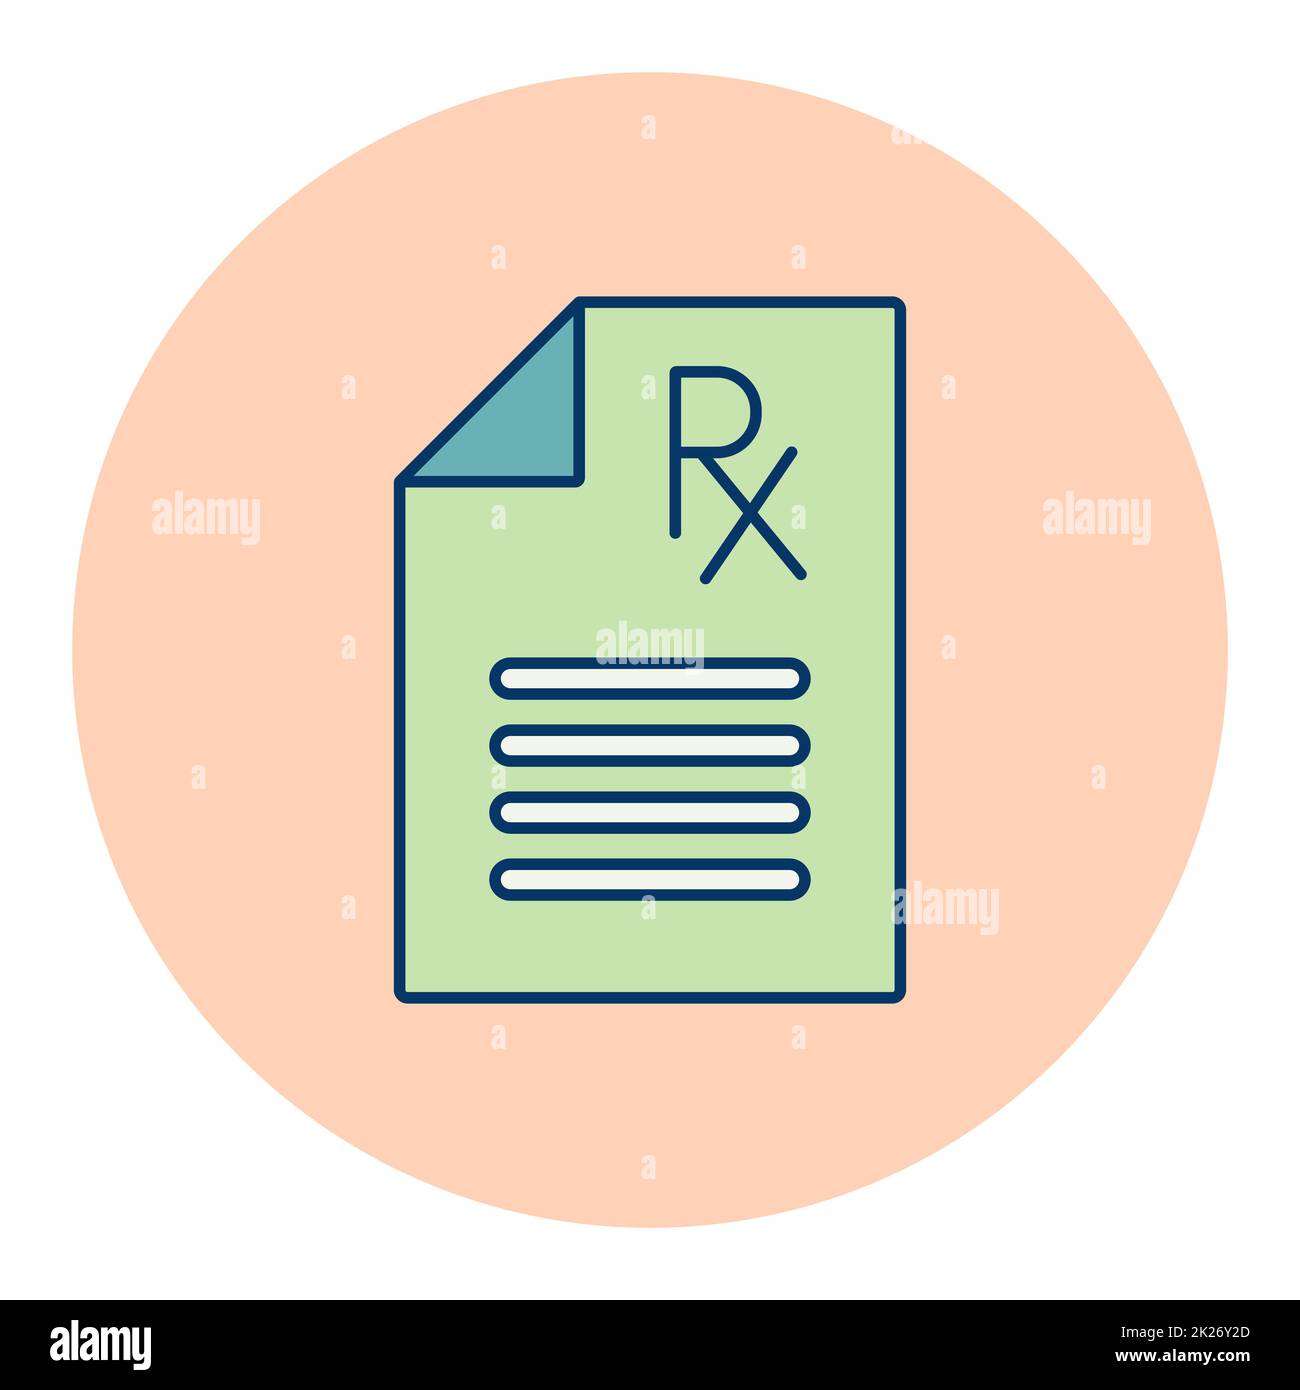 Medical prescription Rx vector icon. Medical sign Stock Photo